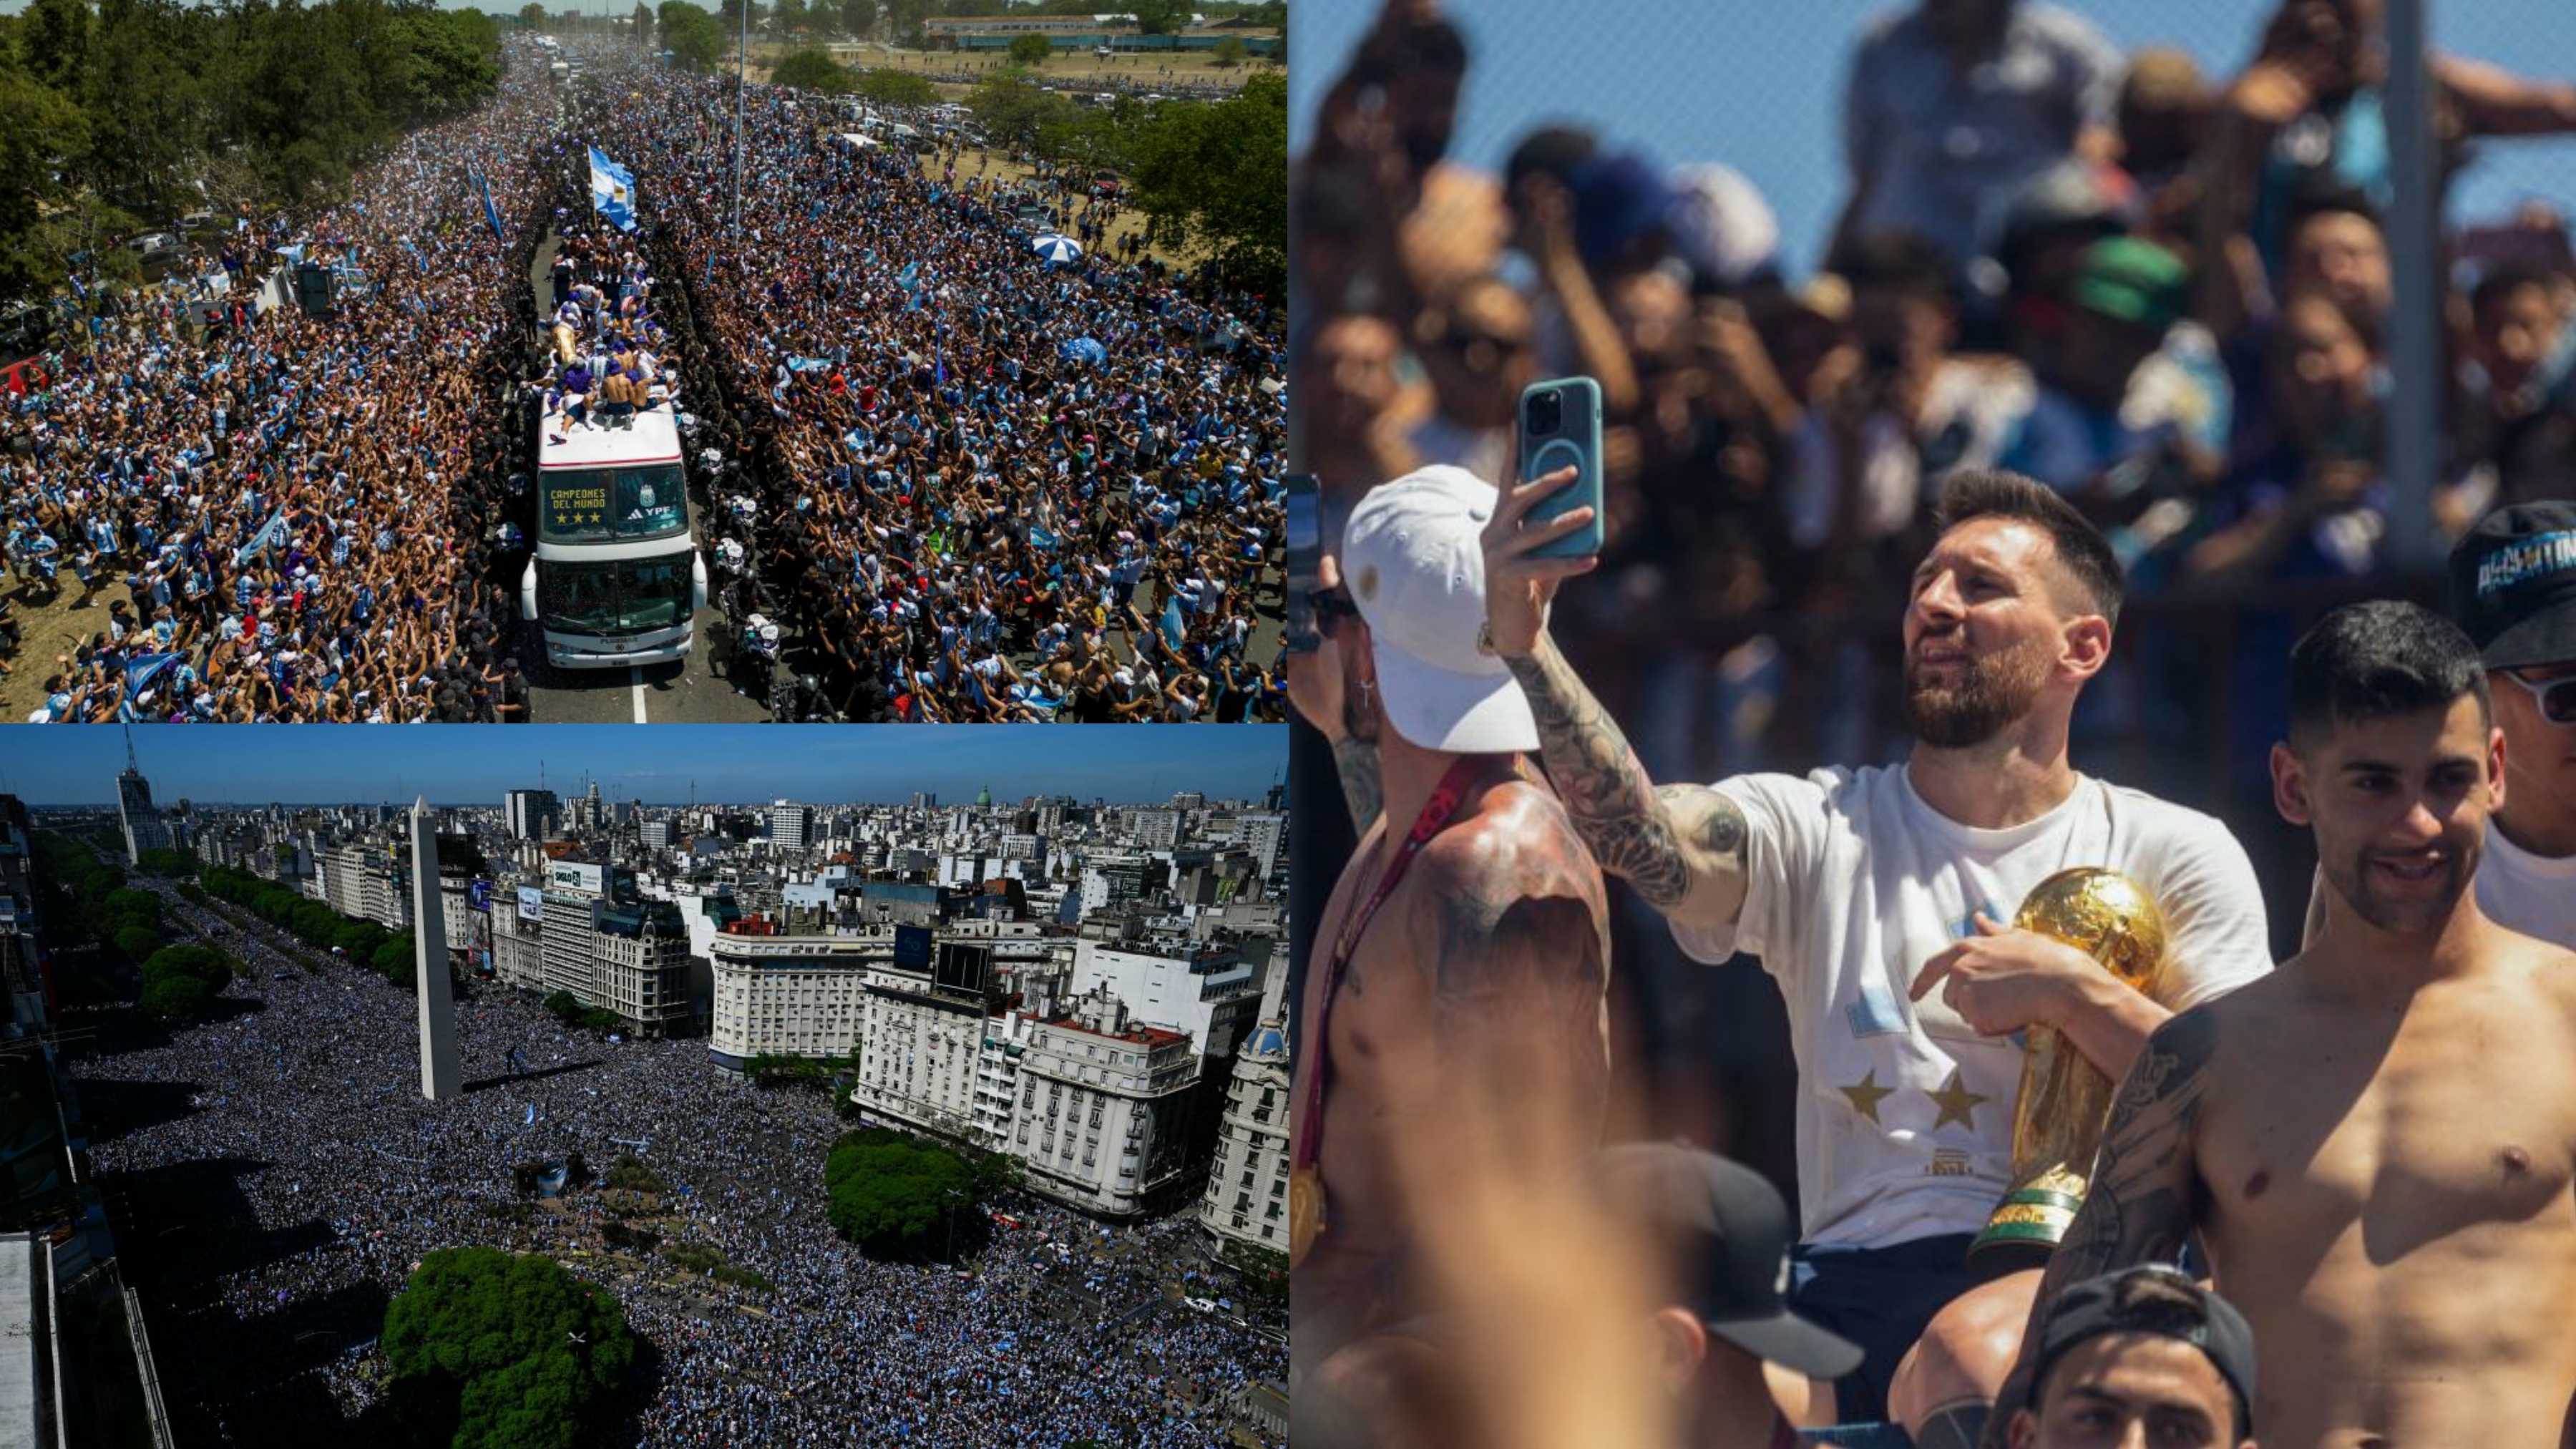 Mondiali: festa Argentina campione, Buenos Aires in delirio. Guarda le foto